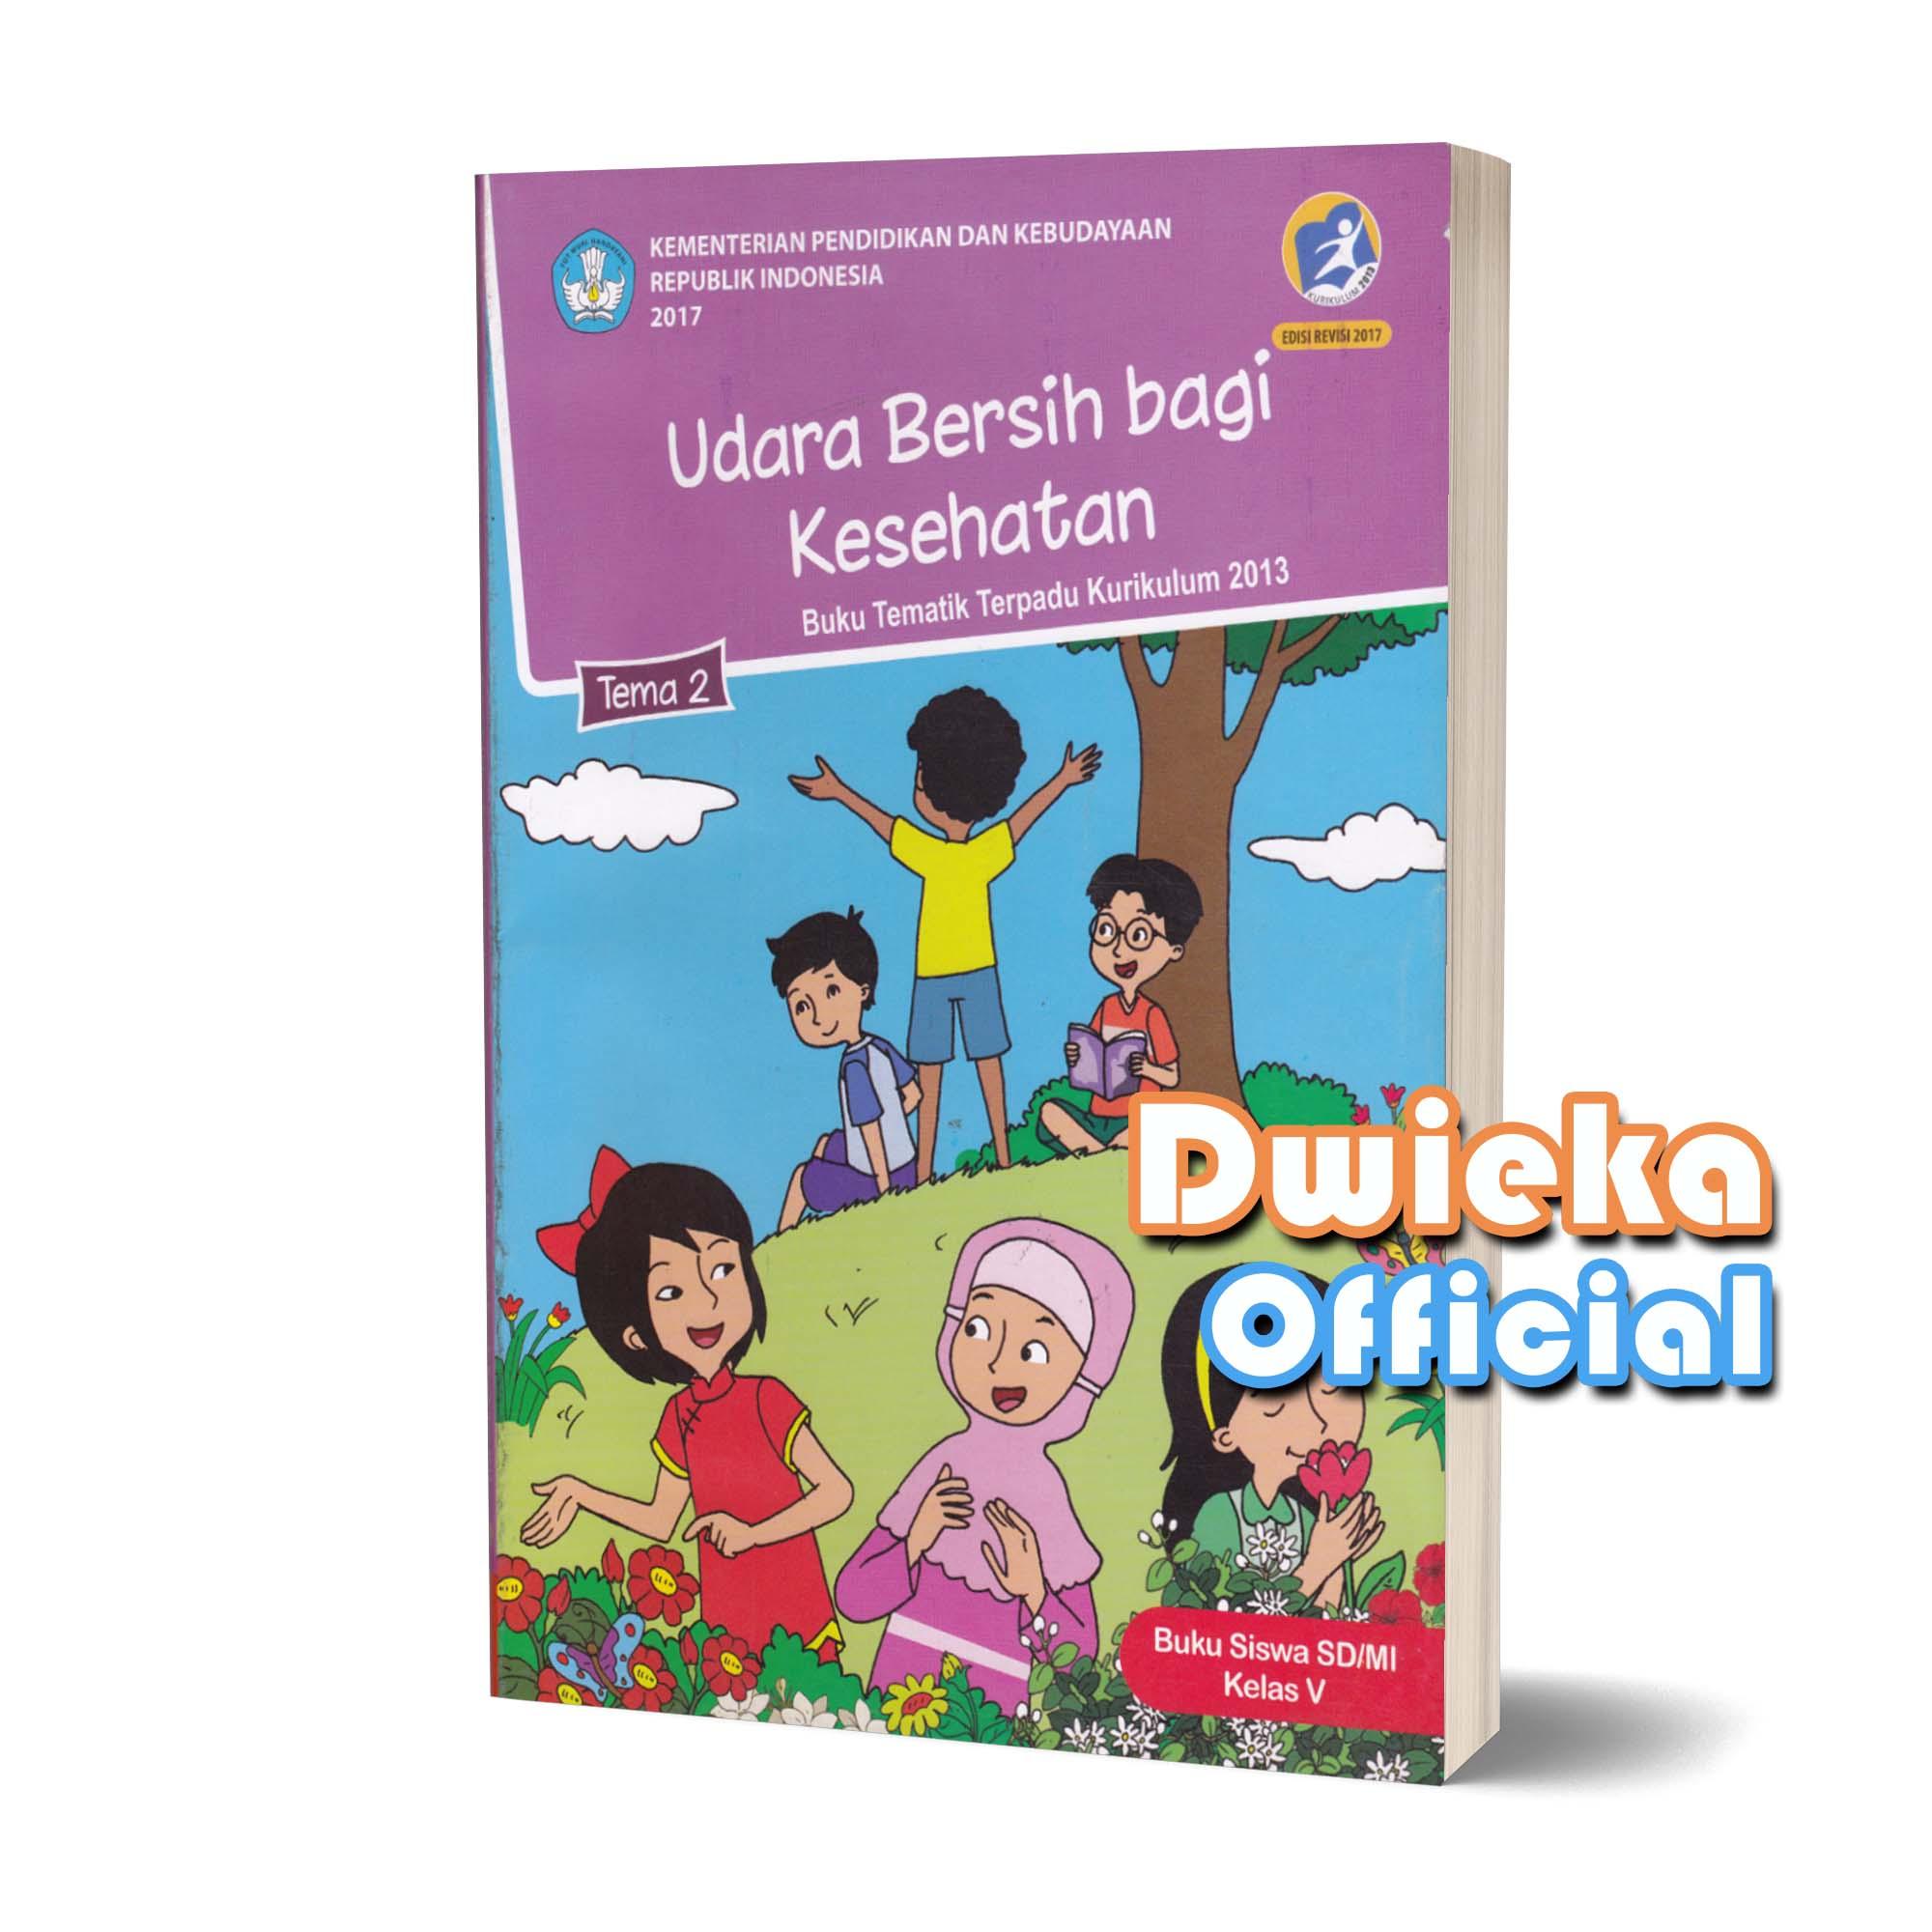 Buku Tematik Kelas 5 Tema 2 Udara Bersih Bagi Kesehatan Kurikulum 2013 Edisi Revisi 2017